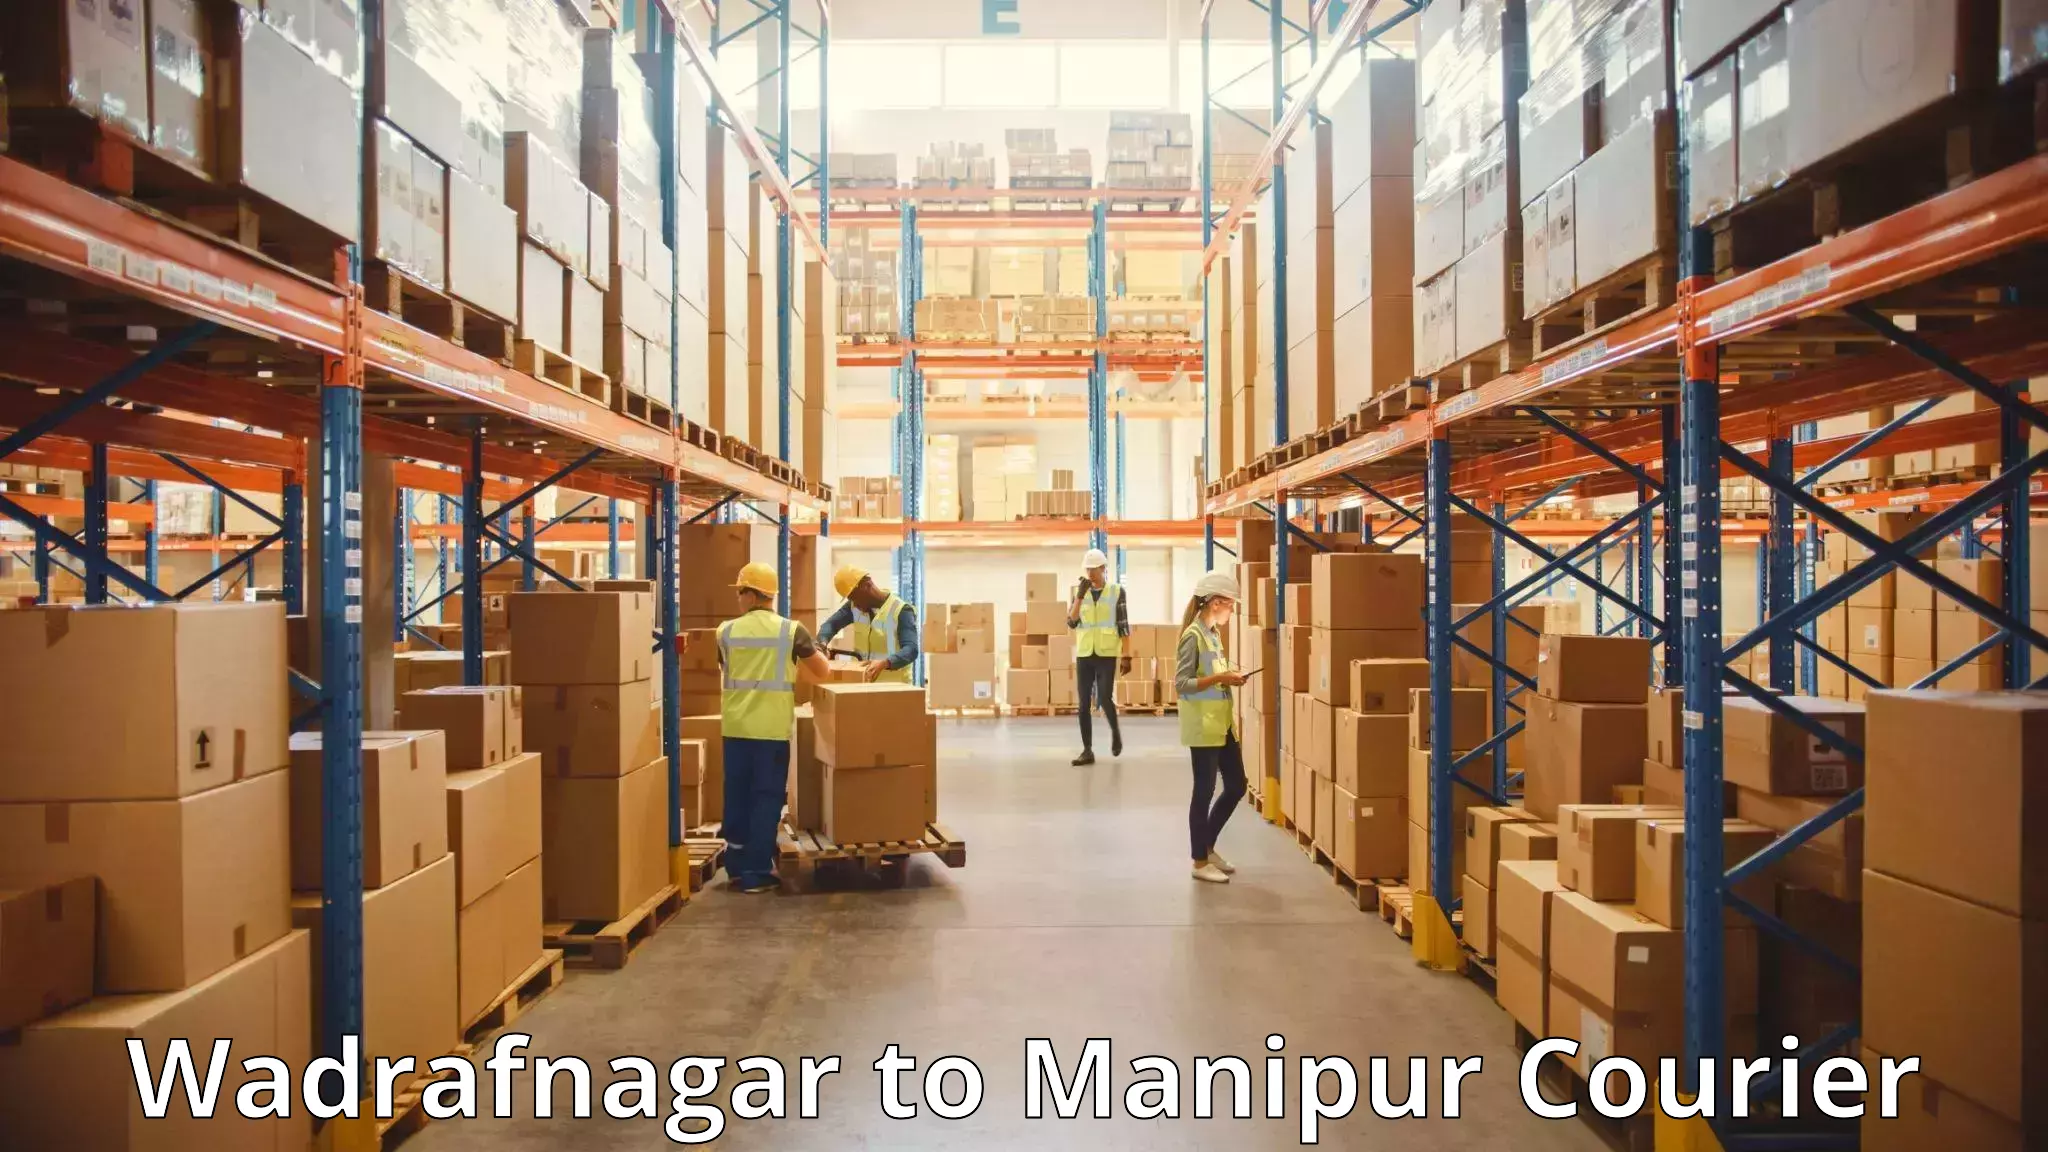 Luggage shipping specialists Wadrafnagar to Manipur